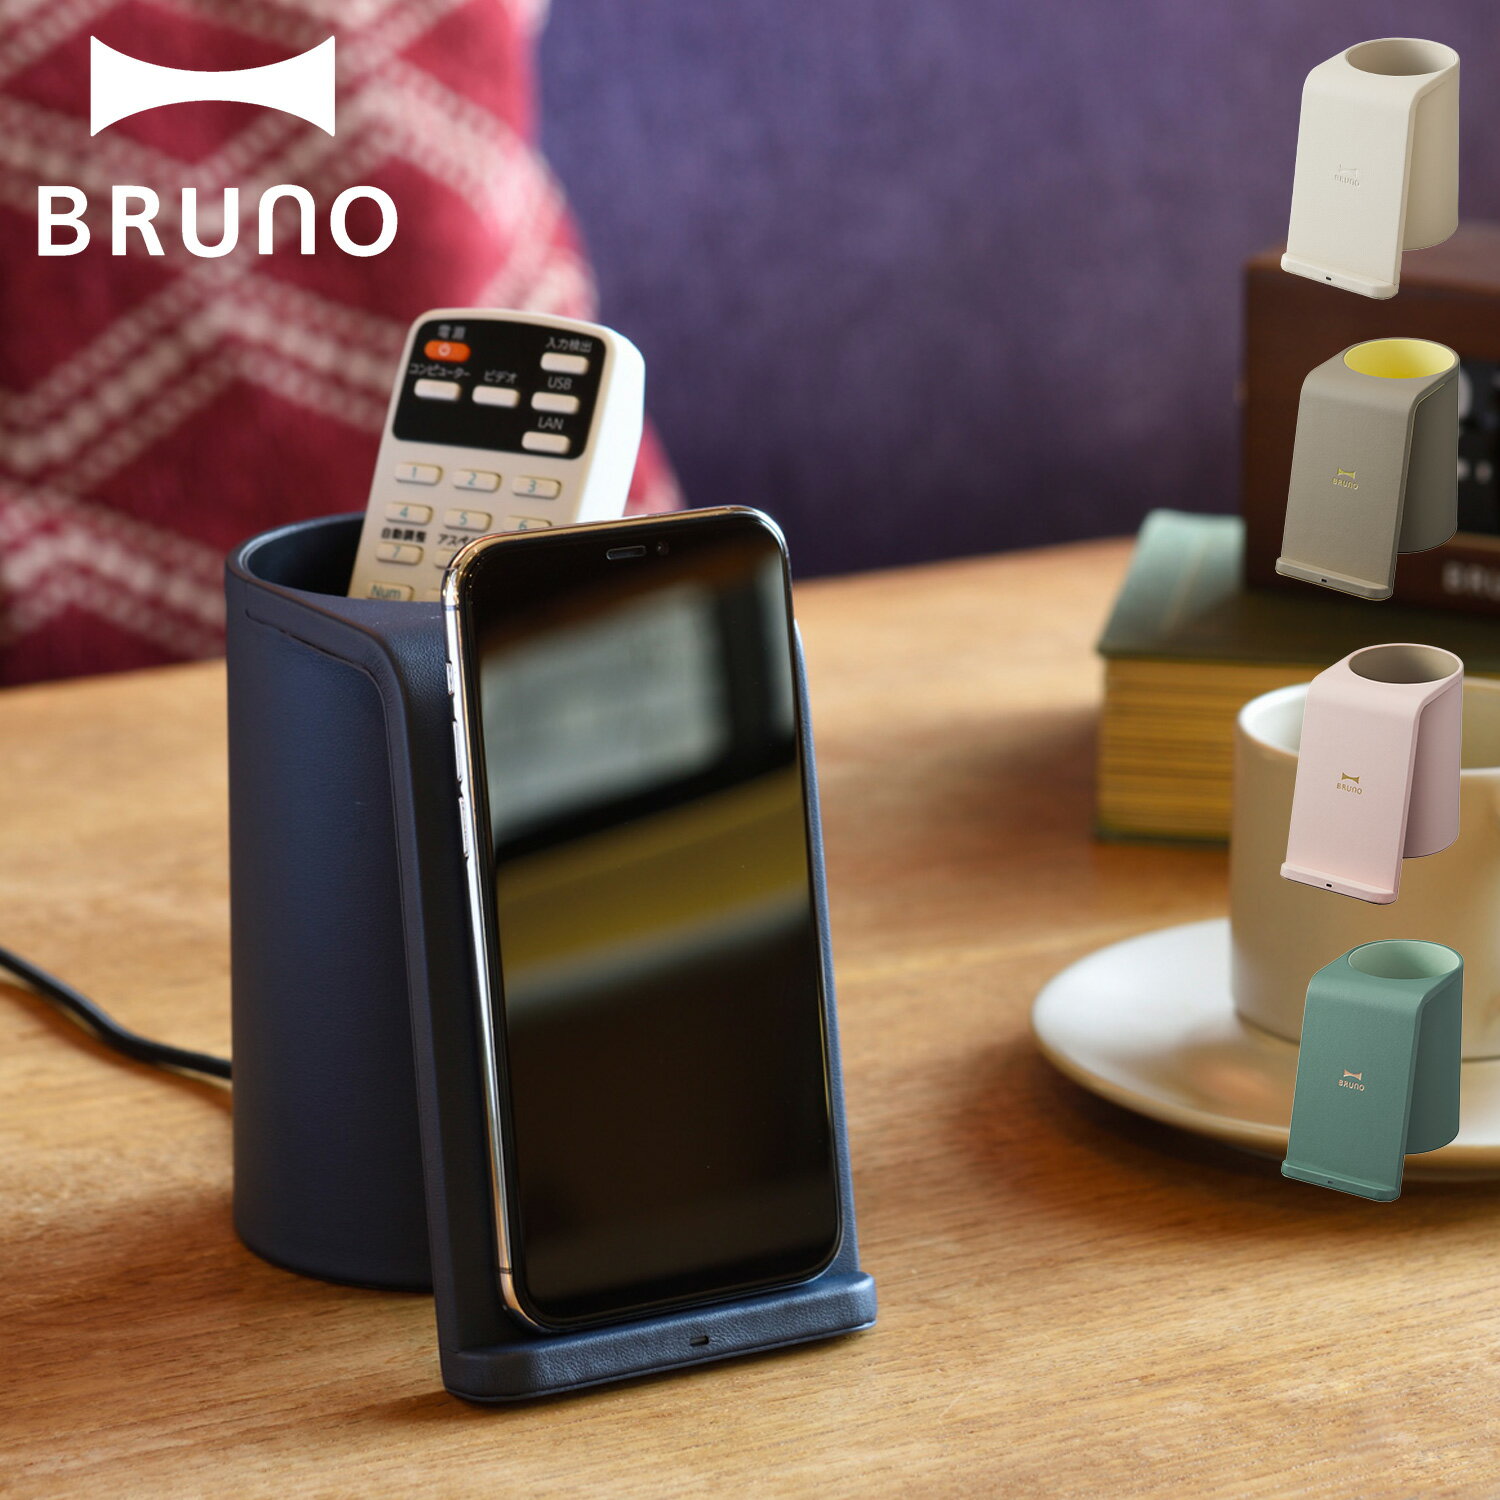 BRUNO ブルーノ ワイヤレス充電器 スタンド 収納ケース 小物入れ QI iPhone アンドロイド 携帯 スマホケース 置くだけ充電 ワイヤレスチャージャー マルチスタンド グレージュ ネイビー BDE049